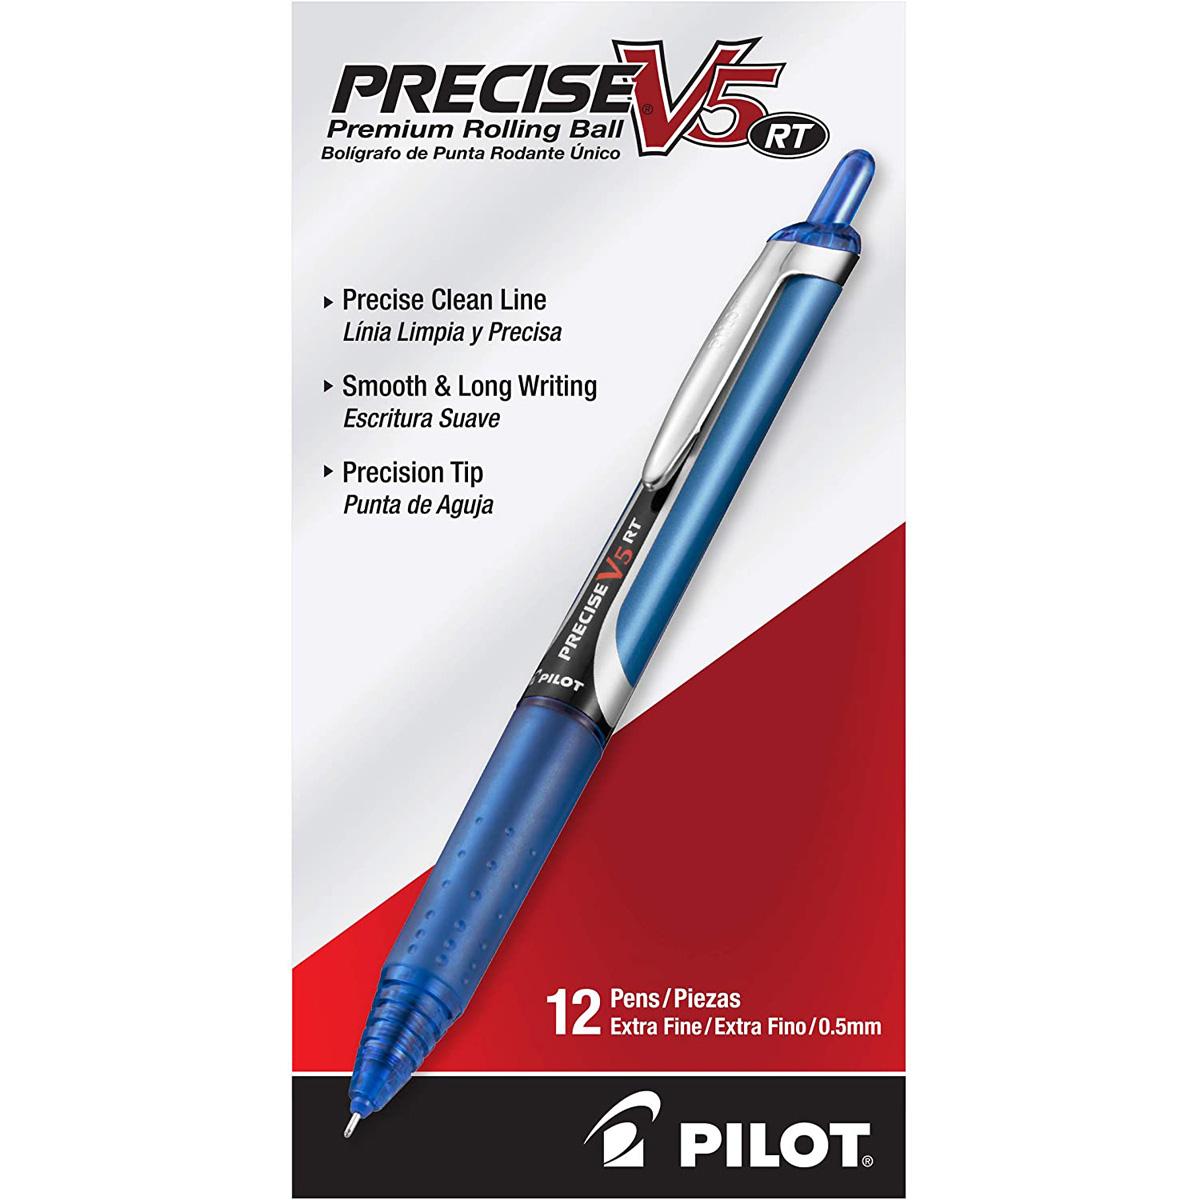 Pilot Precise V5 Stick Liquid Ink Rolling Ball Stick Pens for $10.86 Shipped